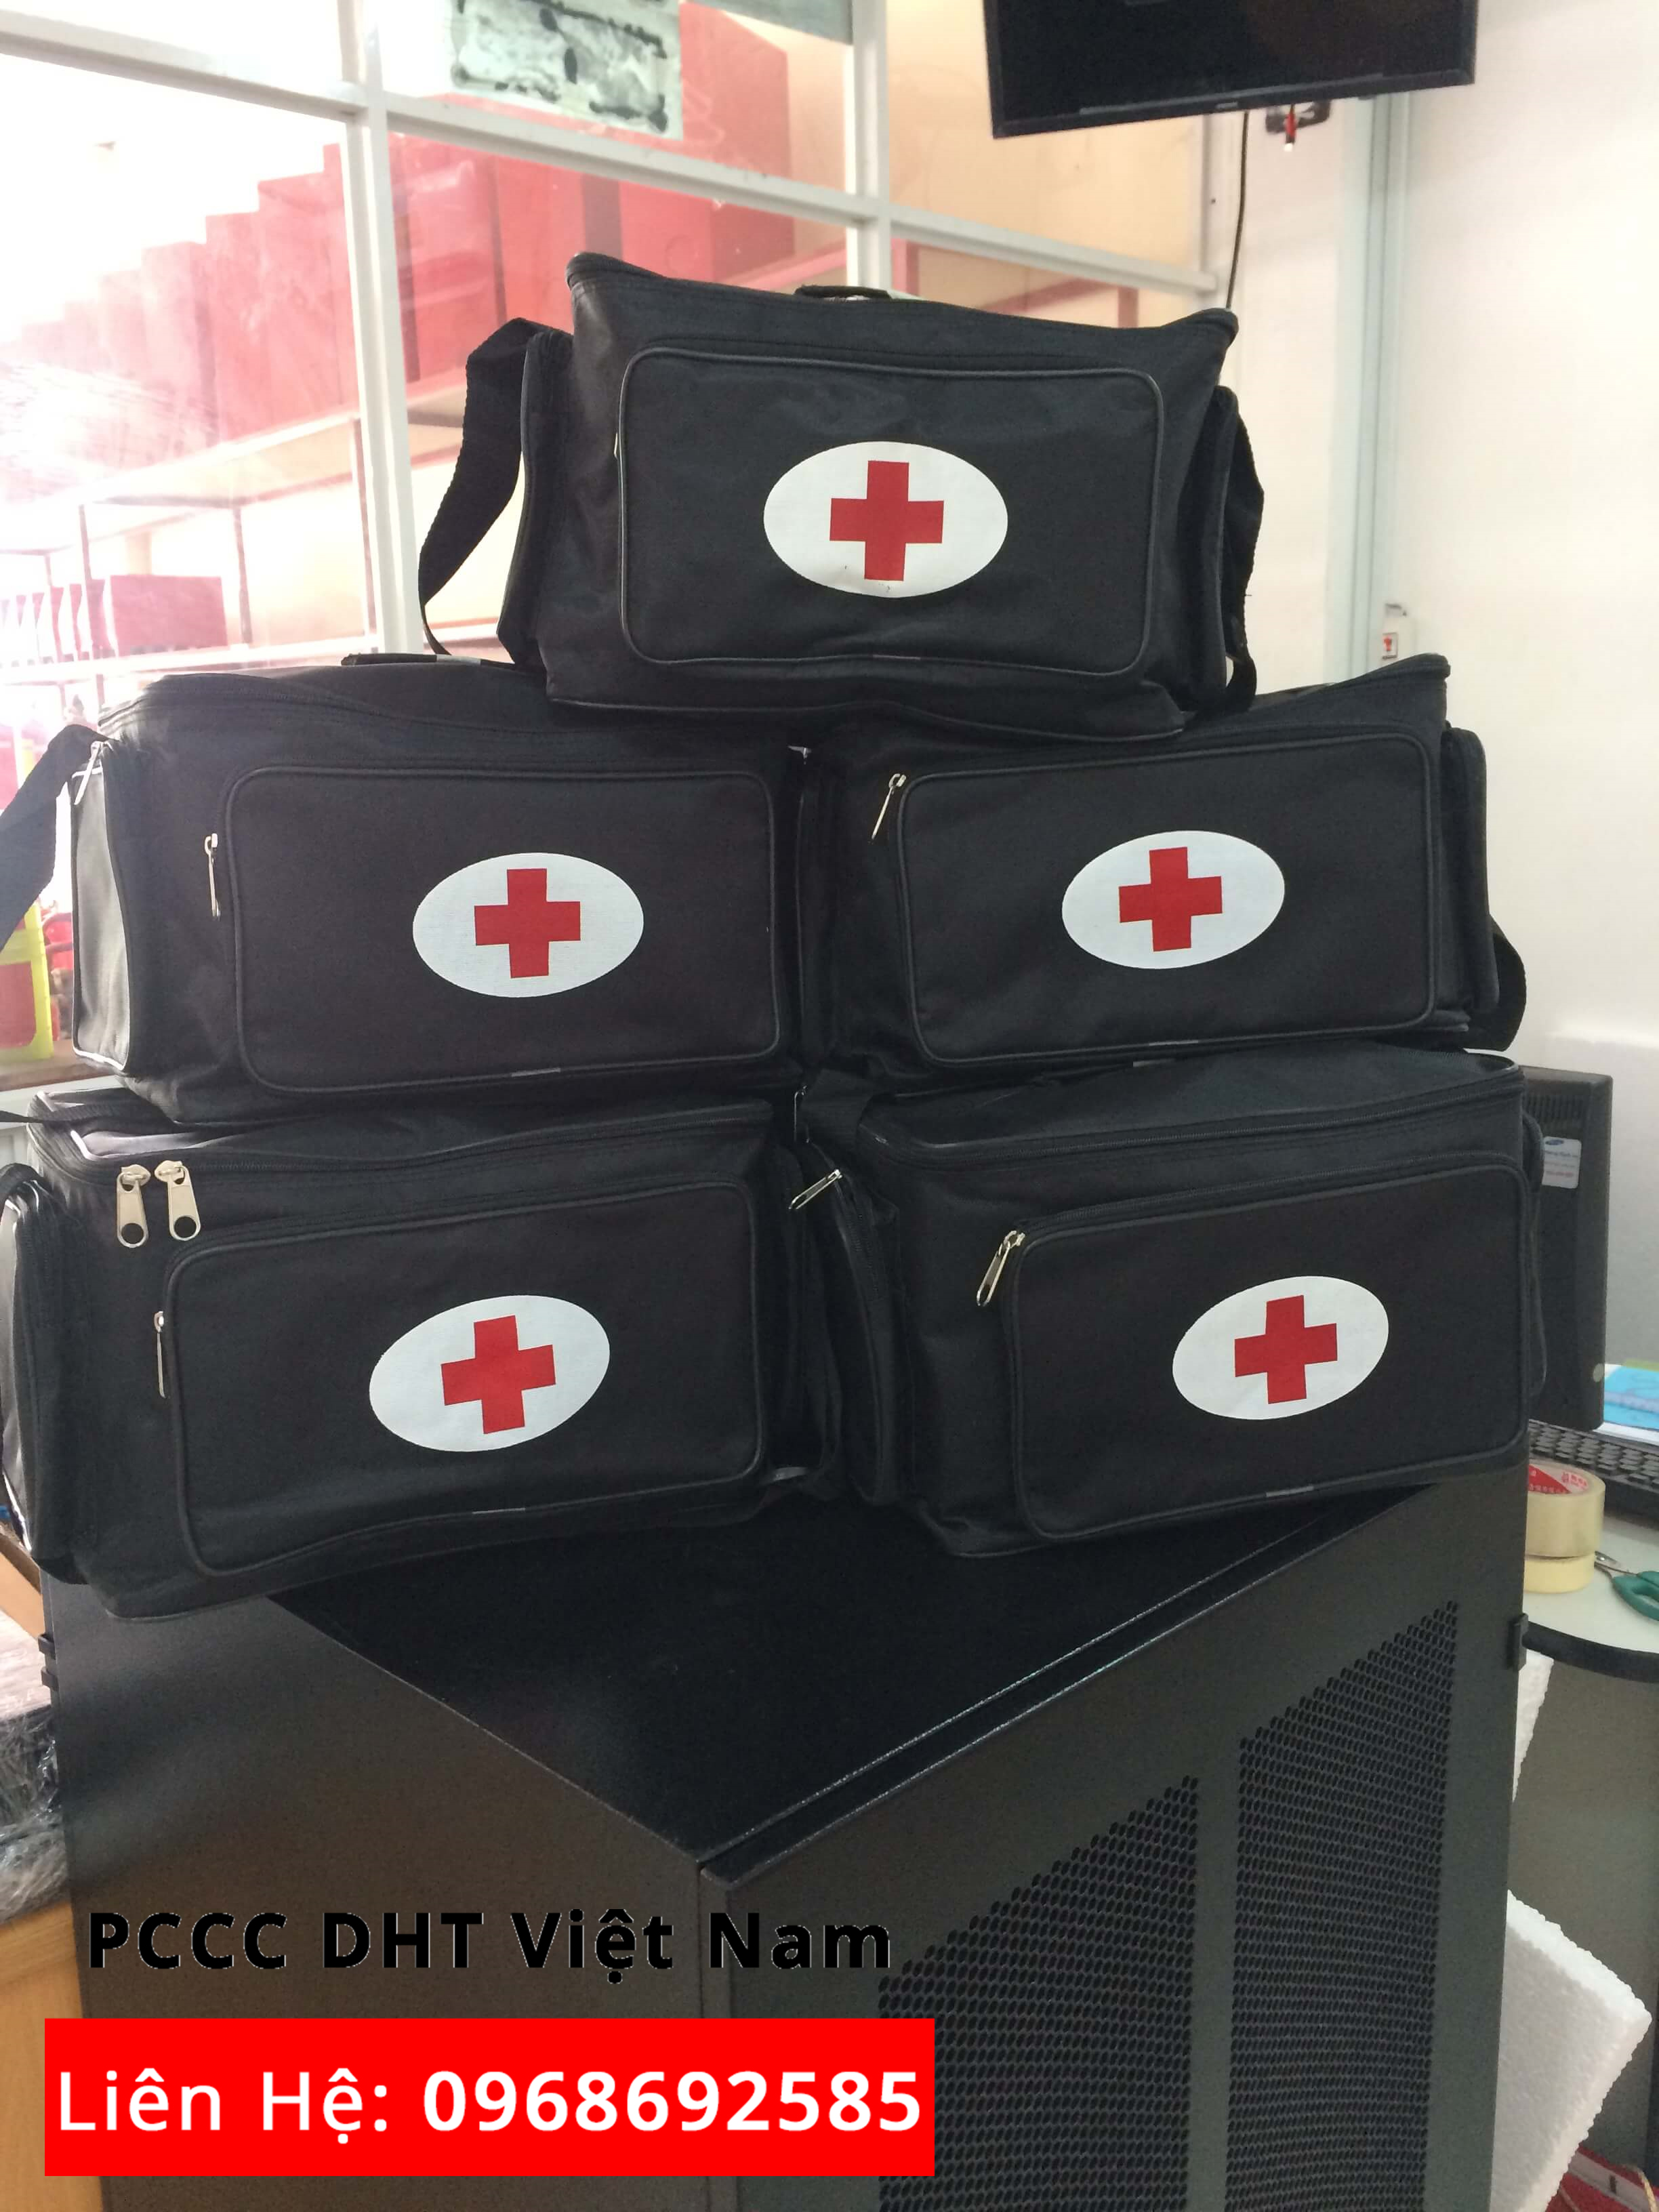 Đến với đơn vị cung cấp túi cứu thương loại A tại KCN SƠN LÔI bạn sẽ không phải lo lắng.